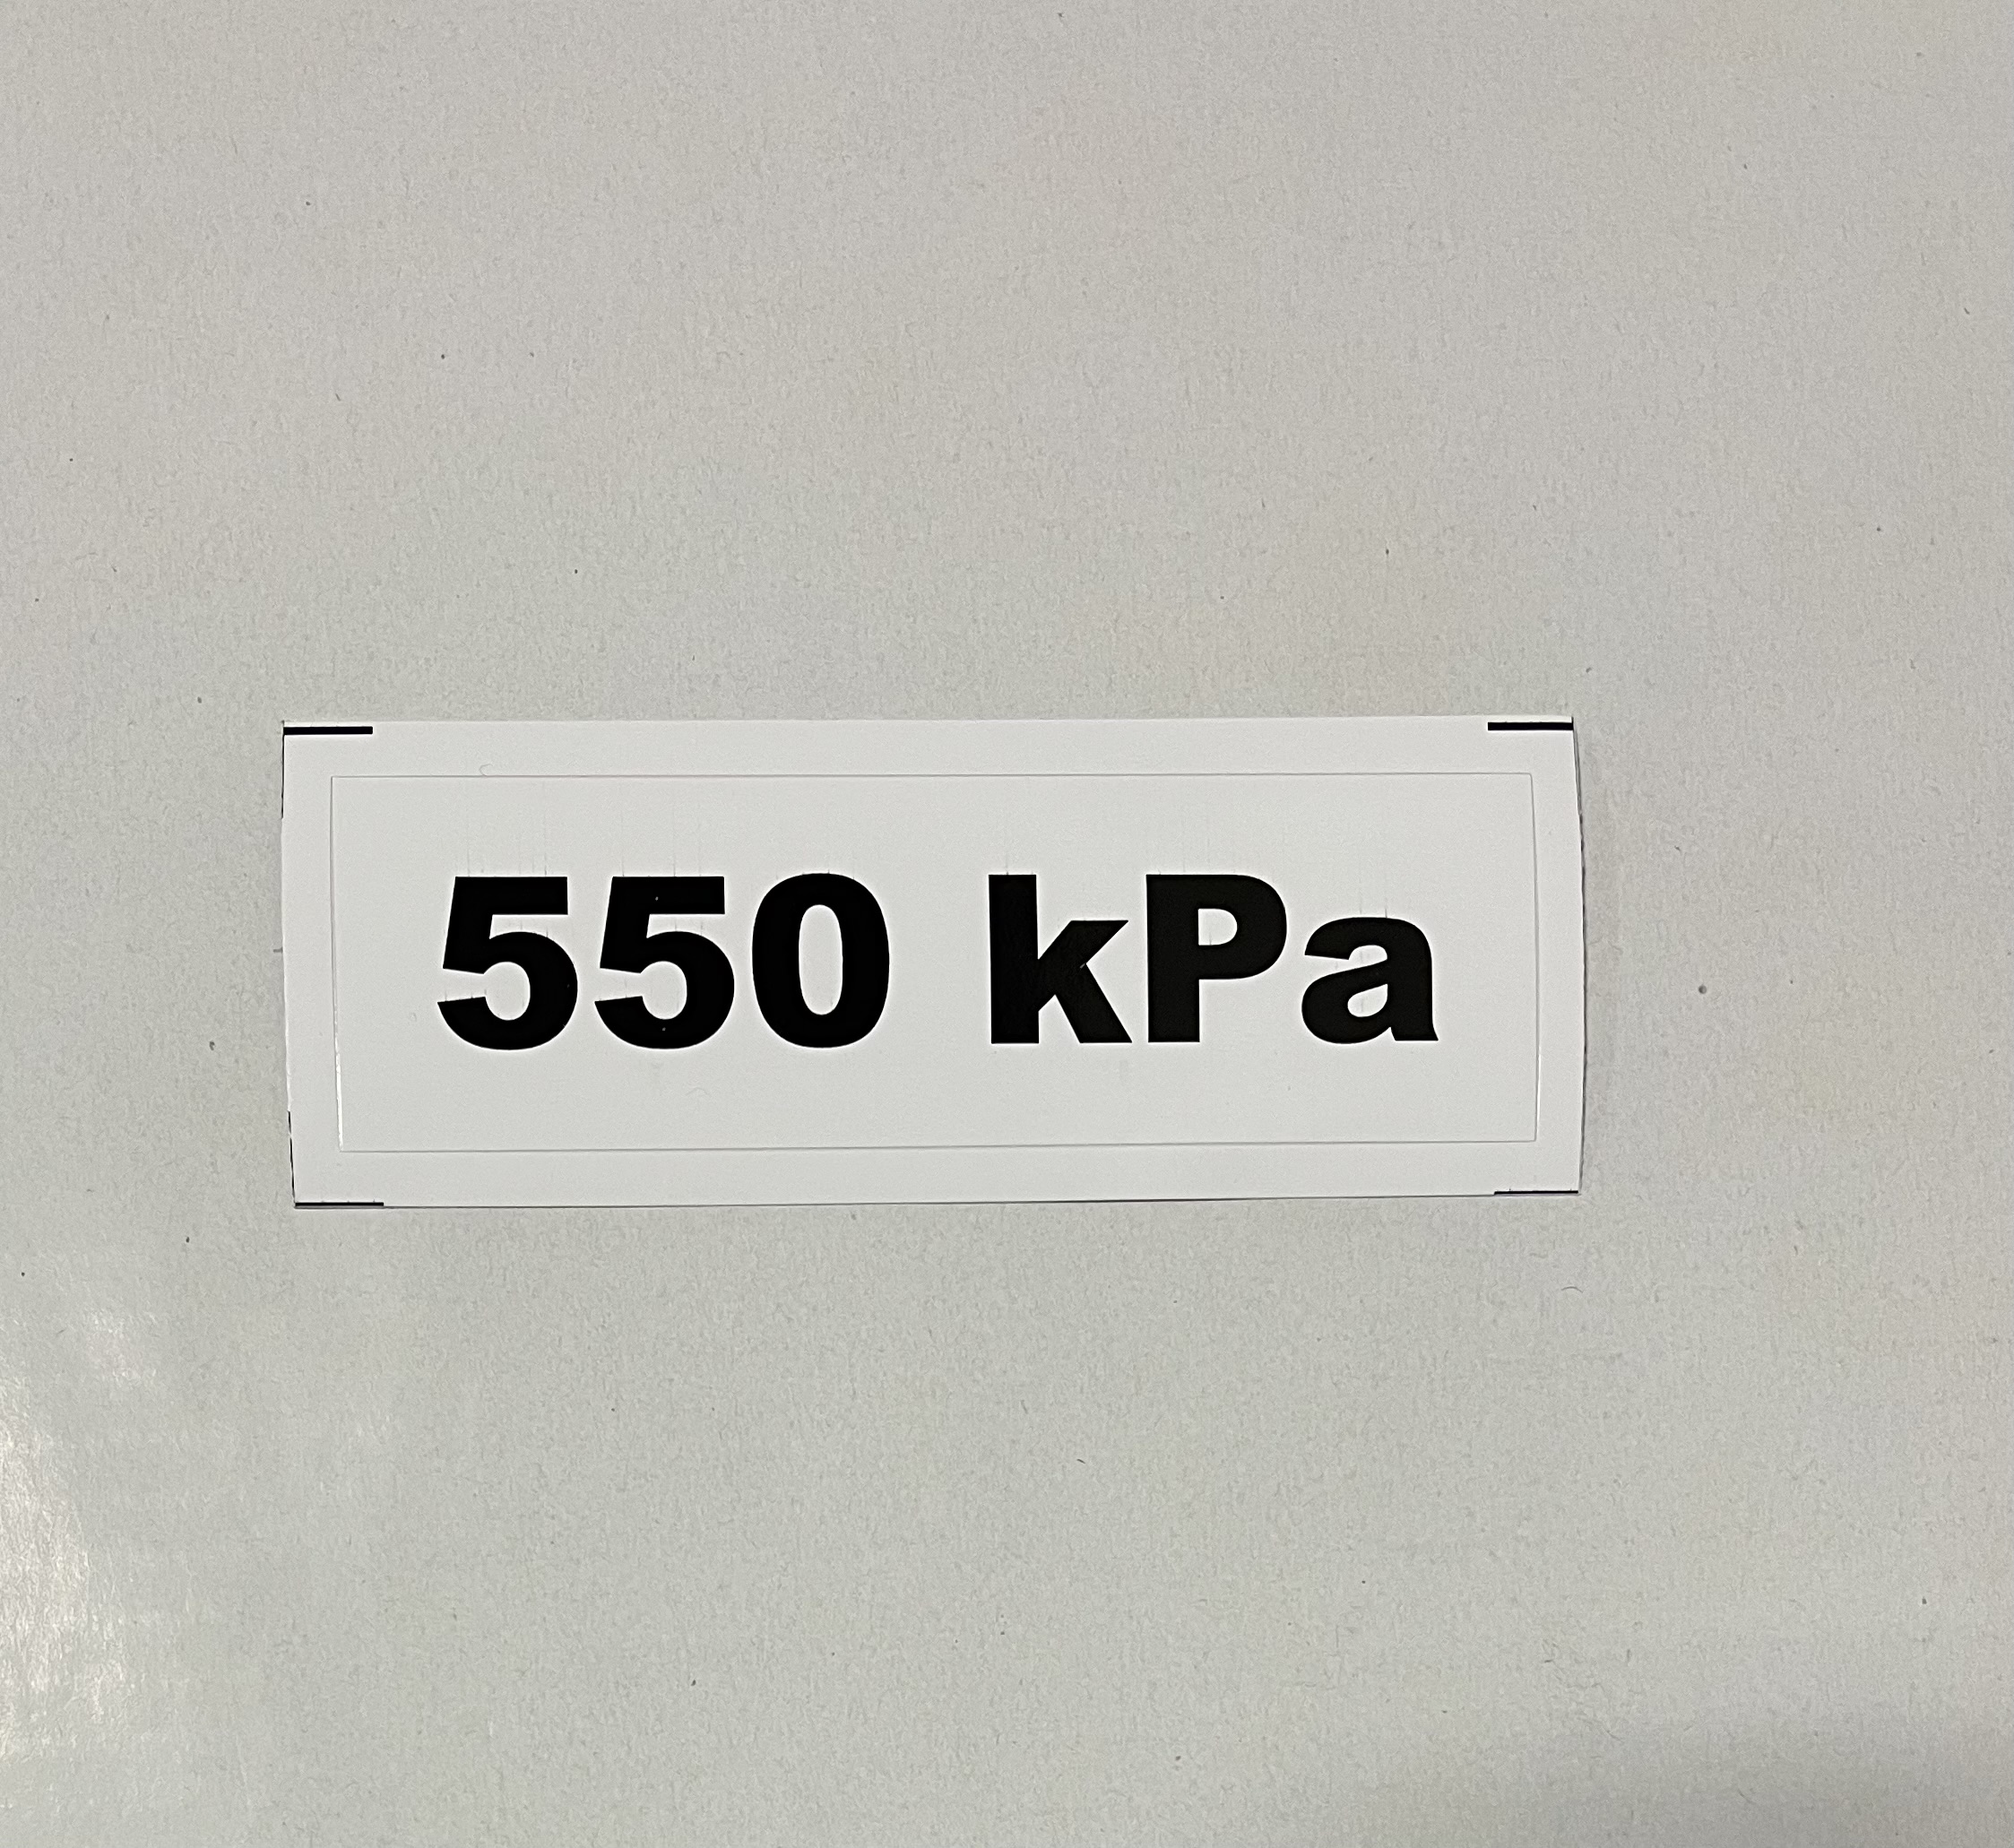 Označenie kPa 550